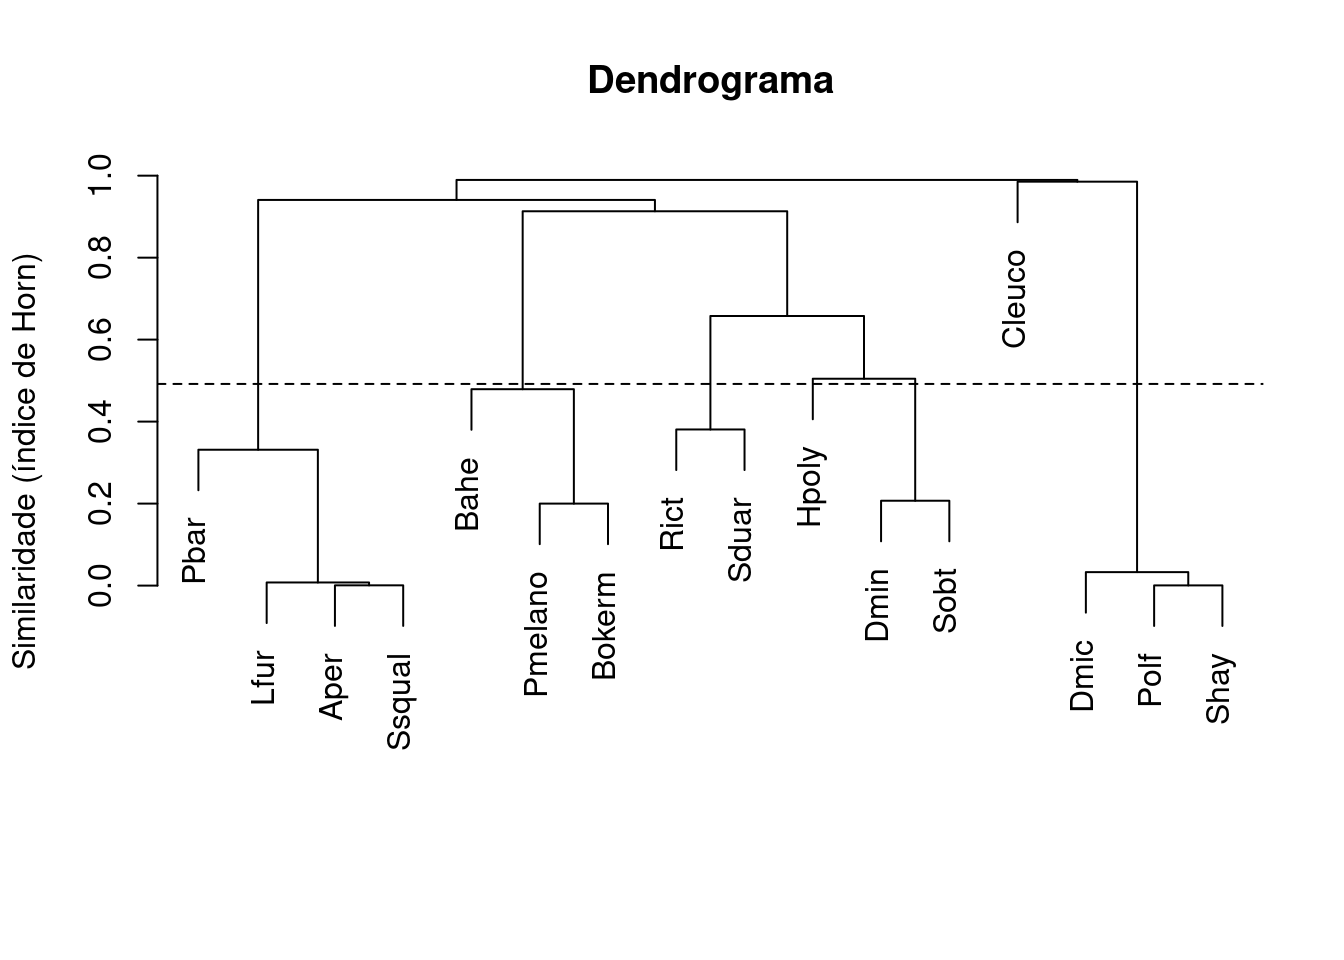 Dendrograma mostrando uma análise de agrupamento de anuros com uma linha de corte formando cinco grupos.